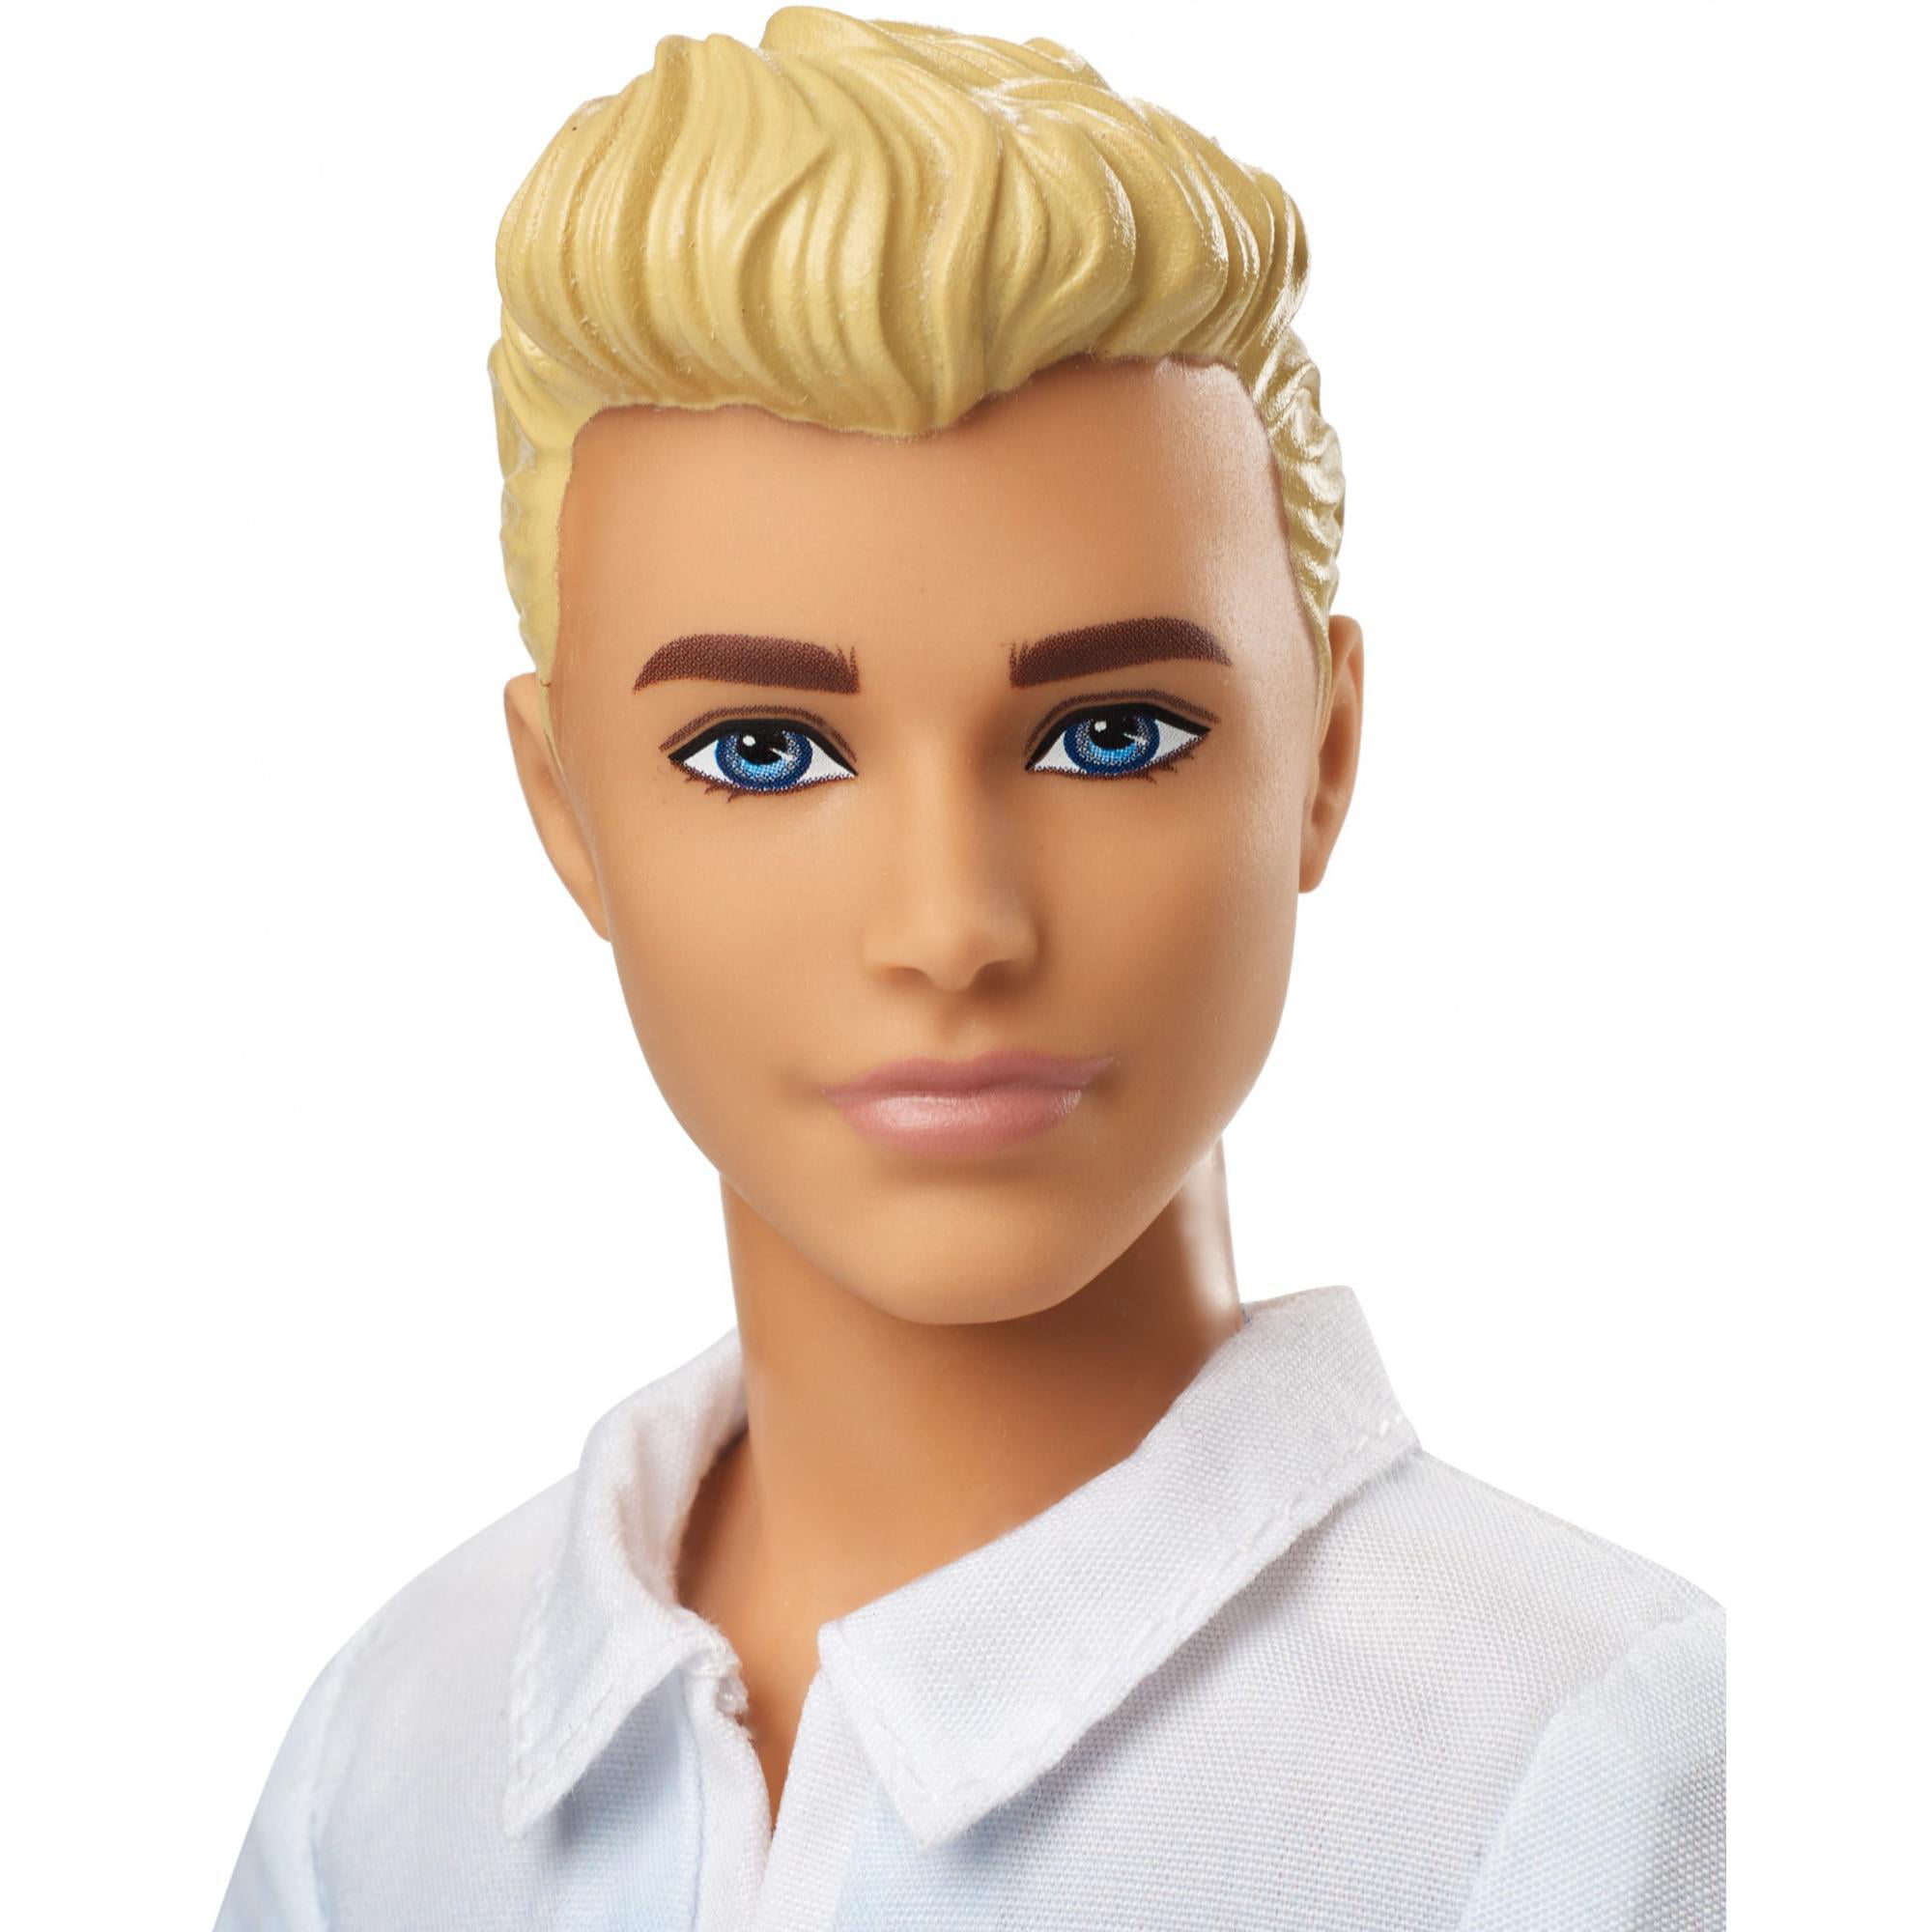 Barbie Ken Blonde Wearing Blue Ombre Shirt - Walmart.com